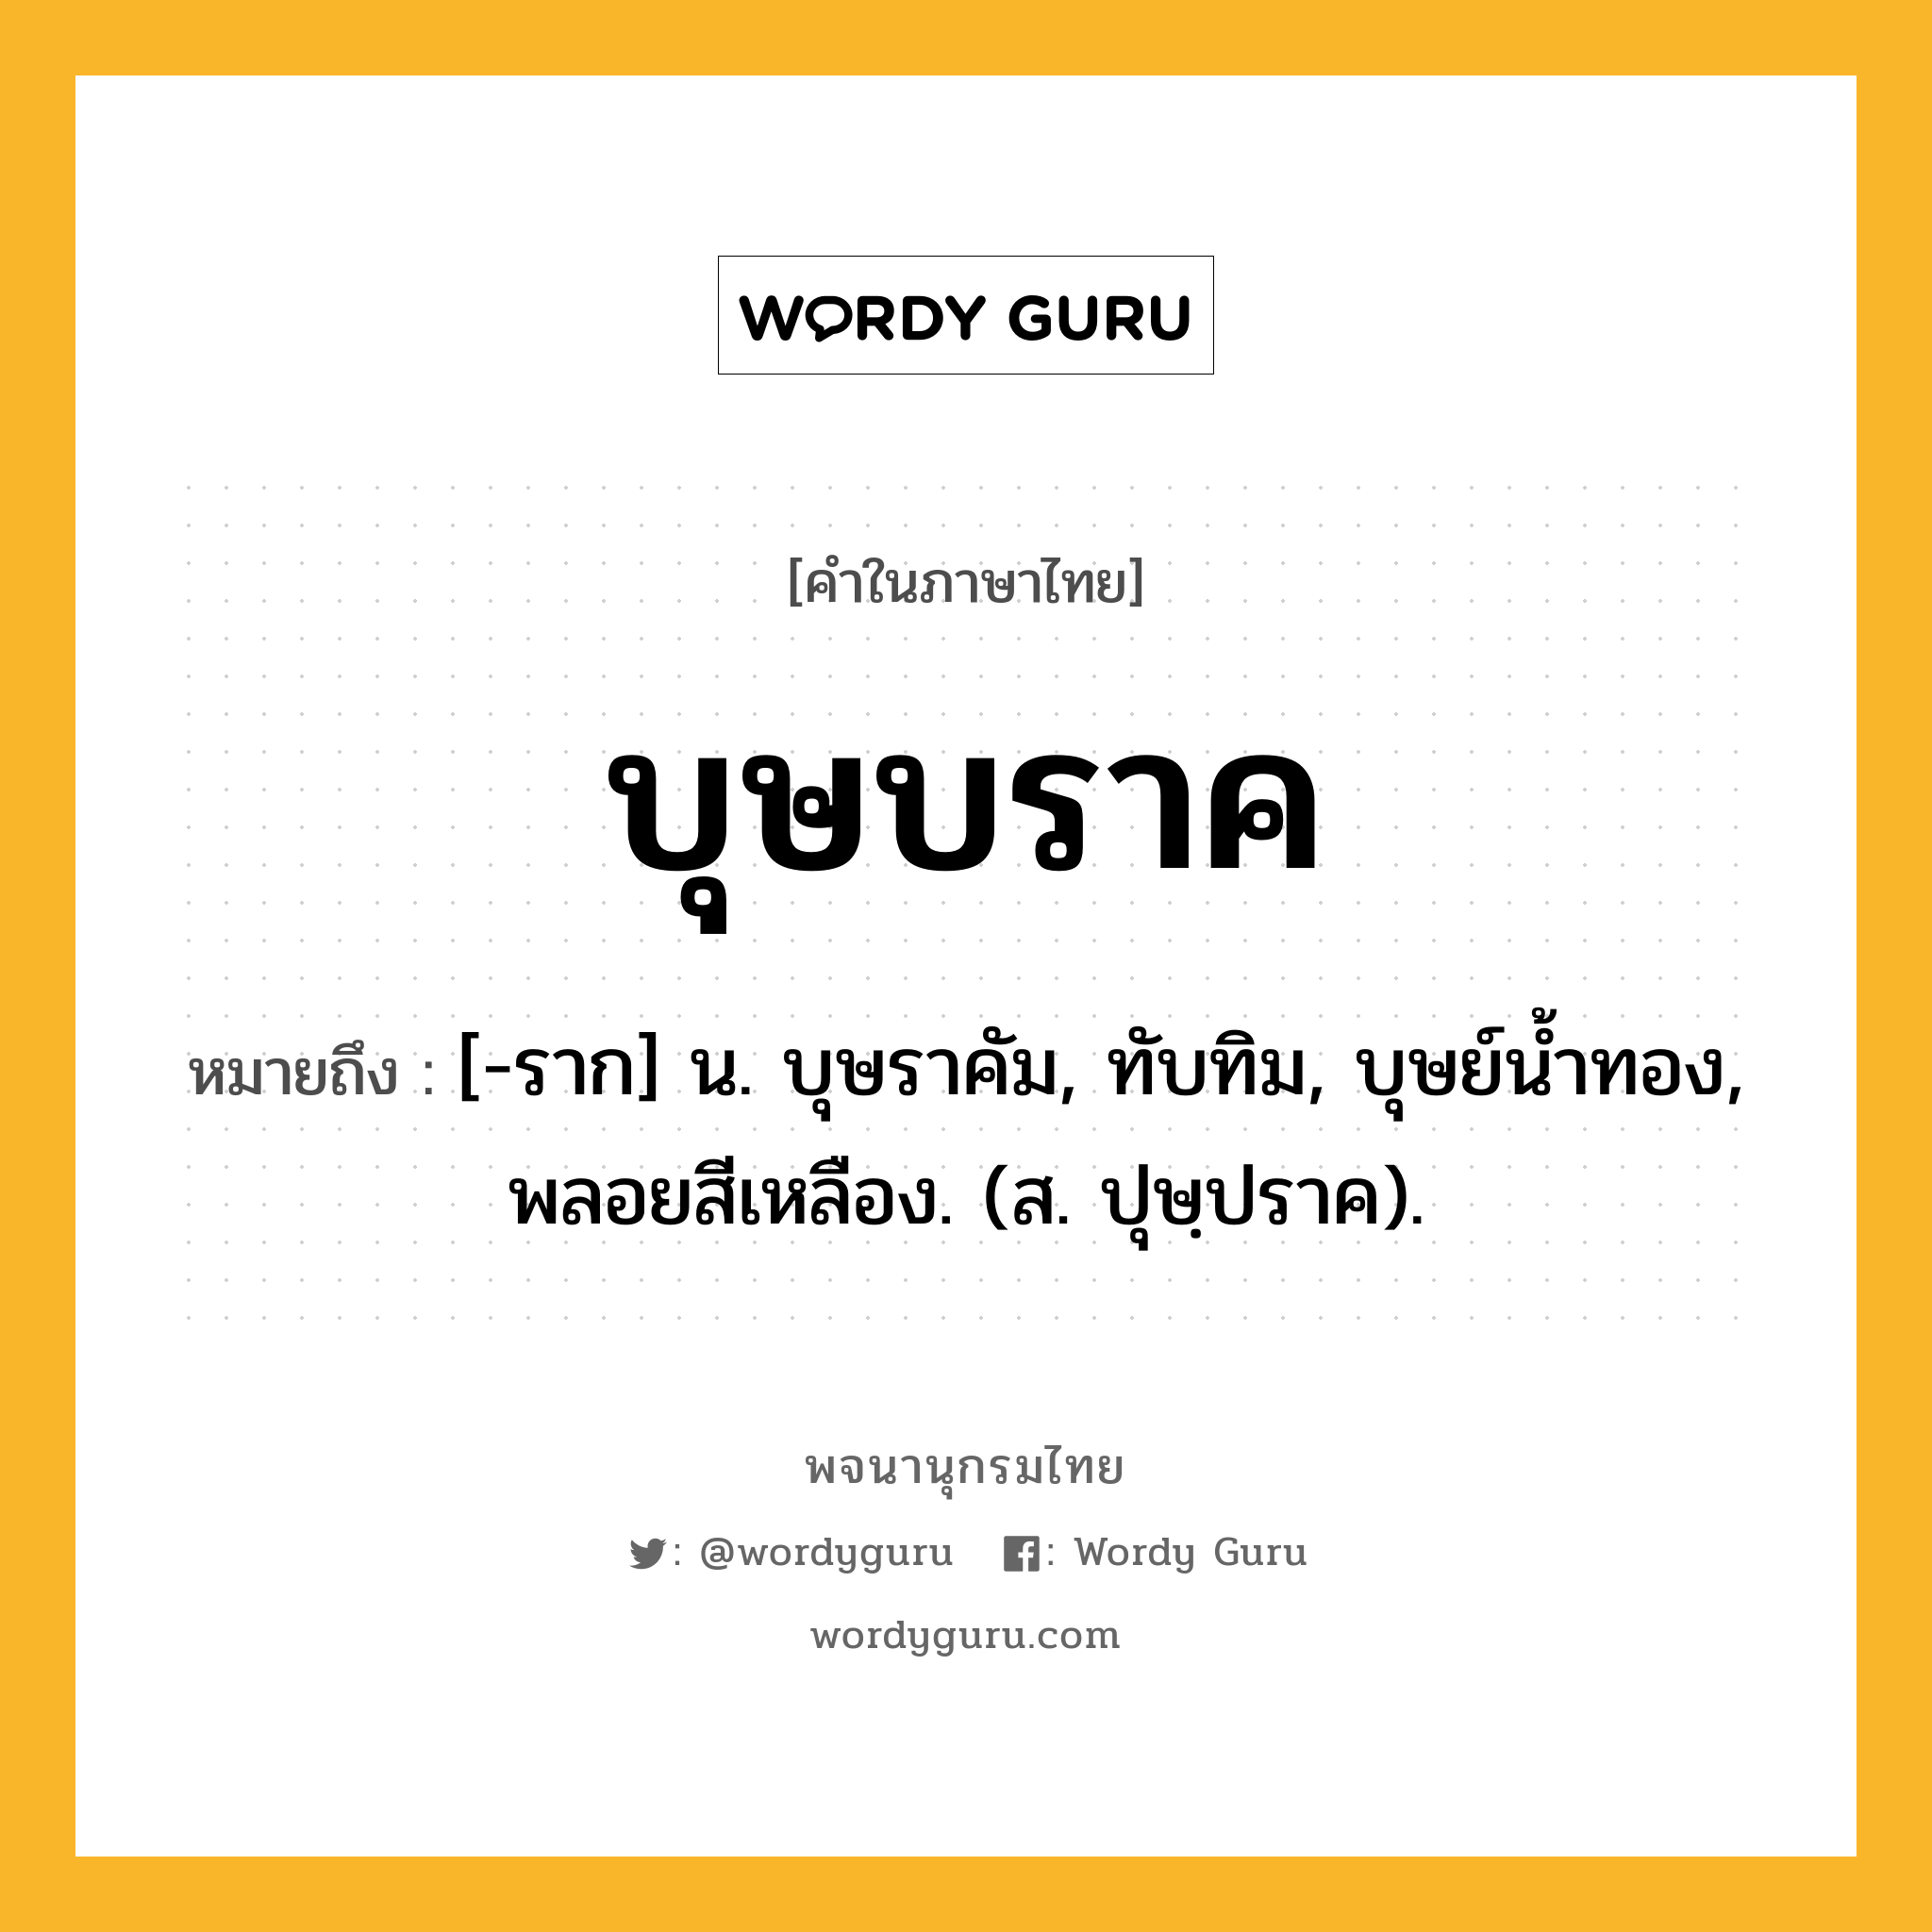 บุษบราค ความหมาย หมายถึงอะไร?, คำในภาษาไทย บุษบราค หมายถึง [-ราก] น. บุษราคัม, ทับทิม, บุษย์นํ้าทอง, พลอยสีเหลือง. (ส. ปุษฺปราค).